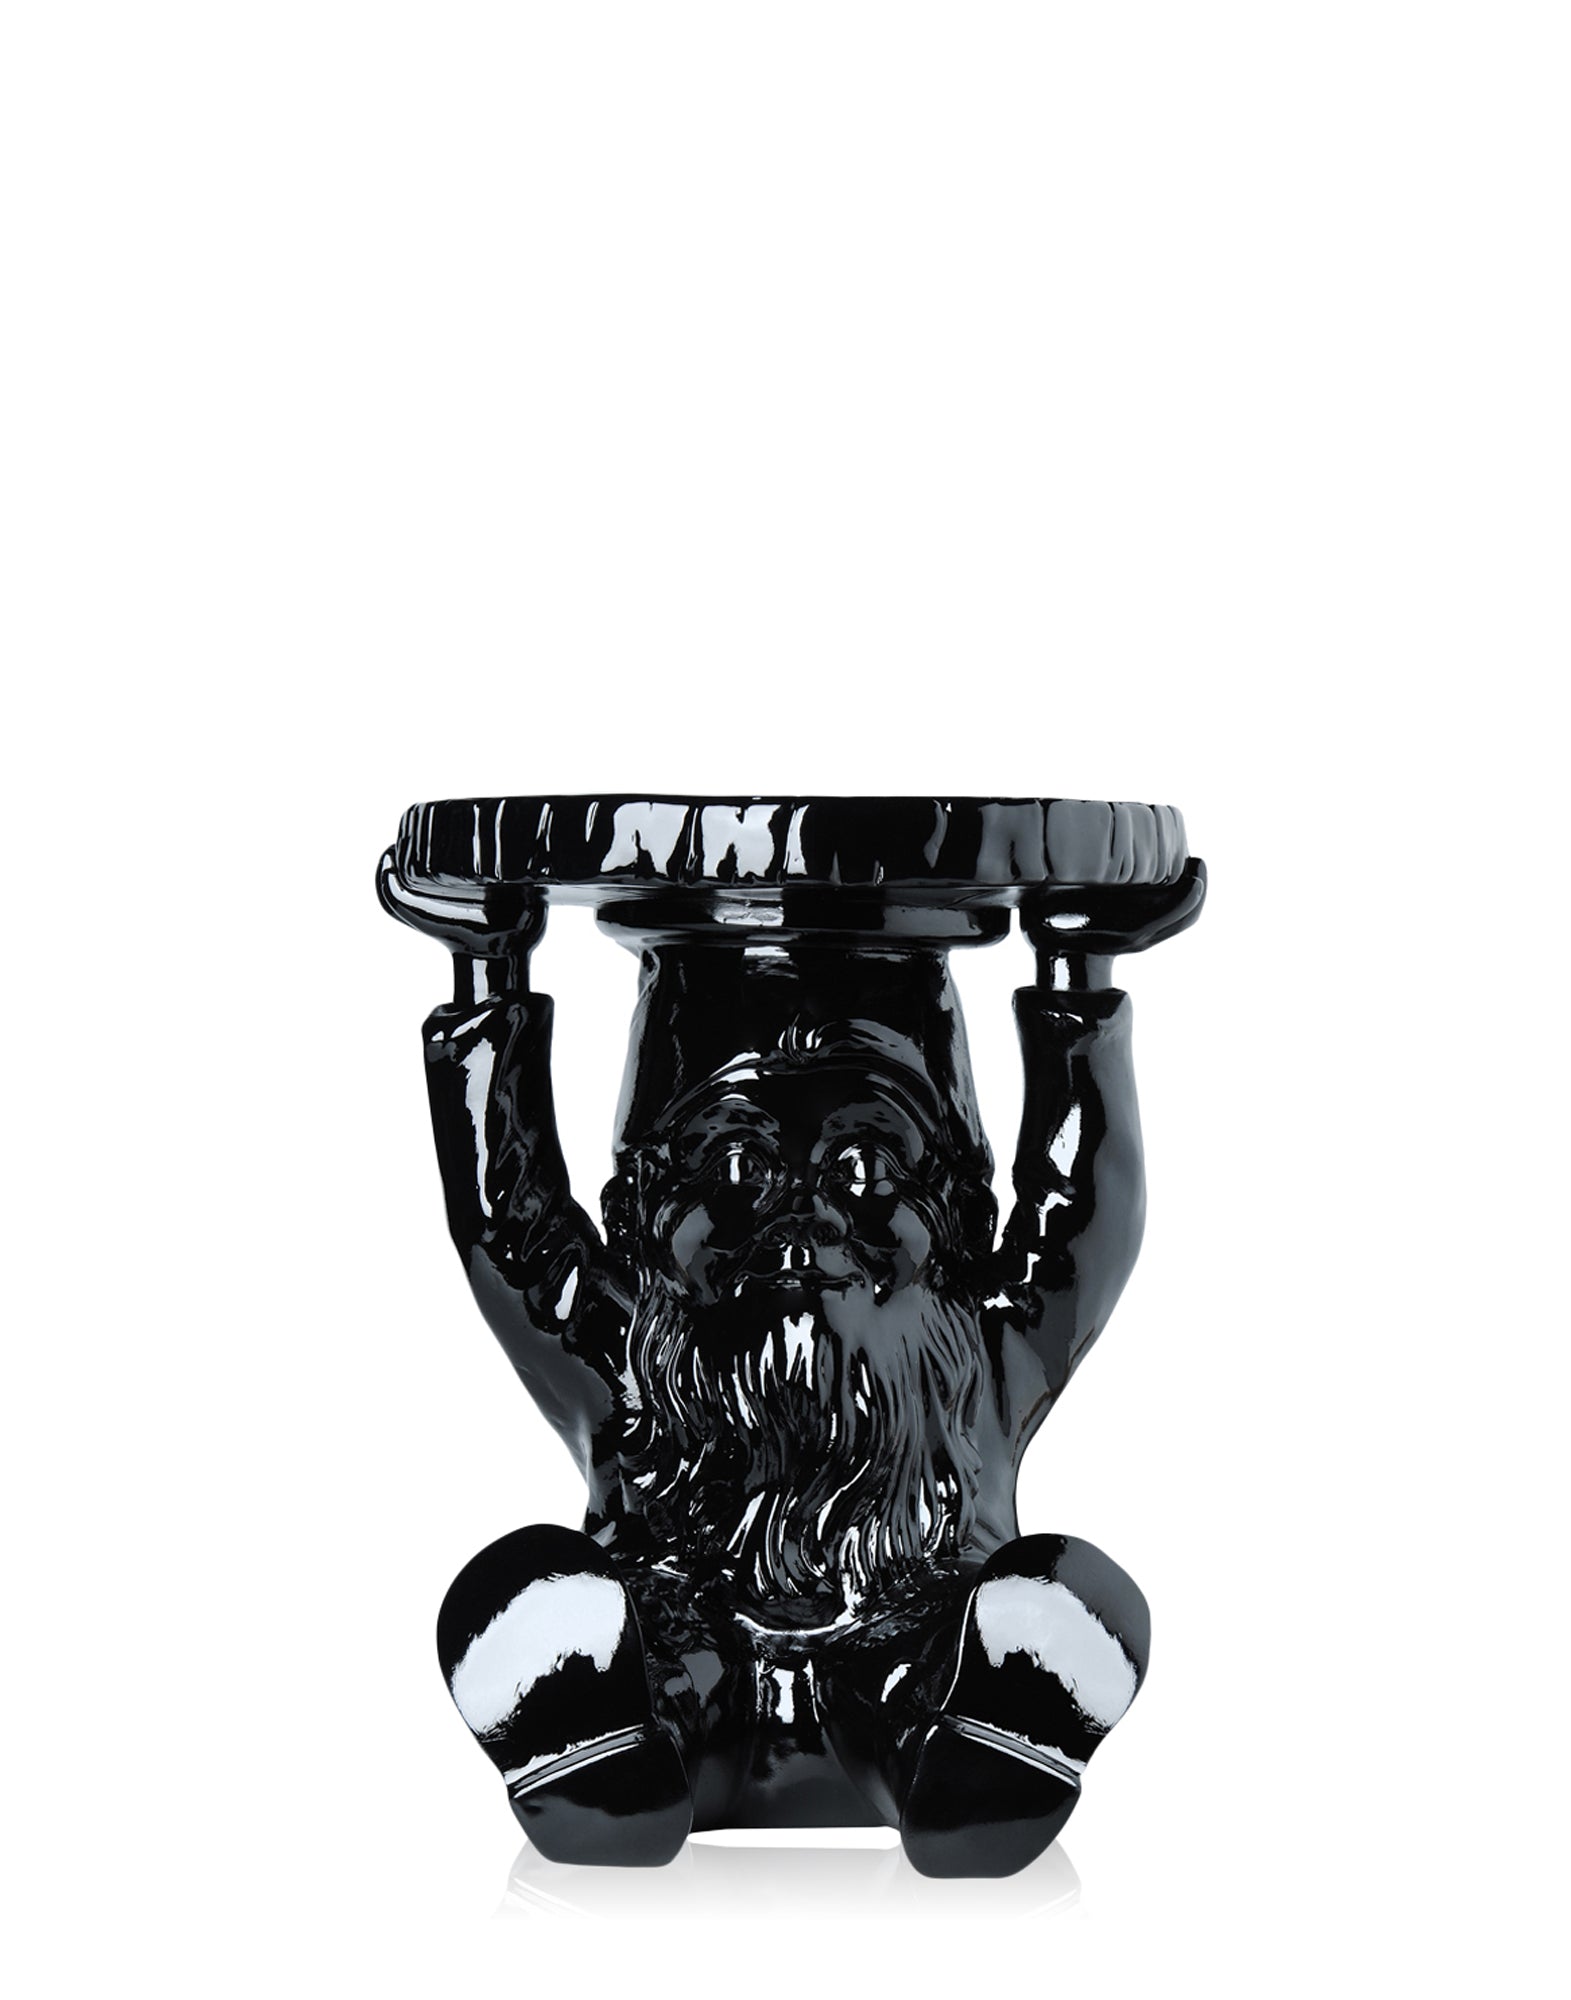 Attila Gnome Ornamental Side Table - Black